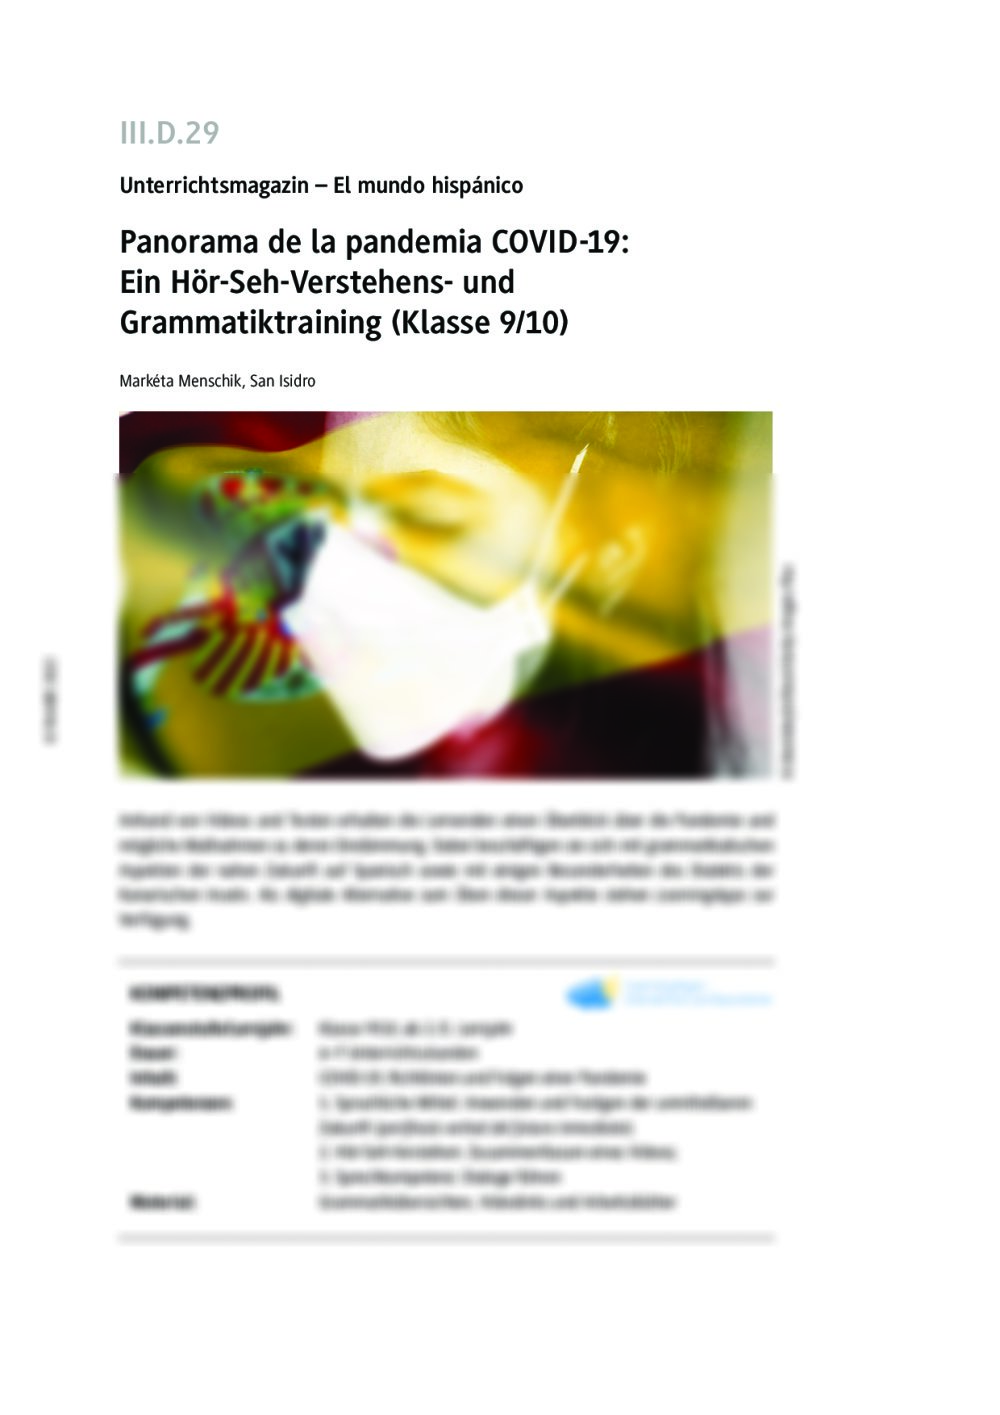 Panorama de la pandemia COVID-19 - Seite 1